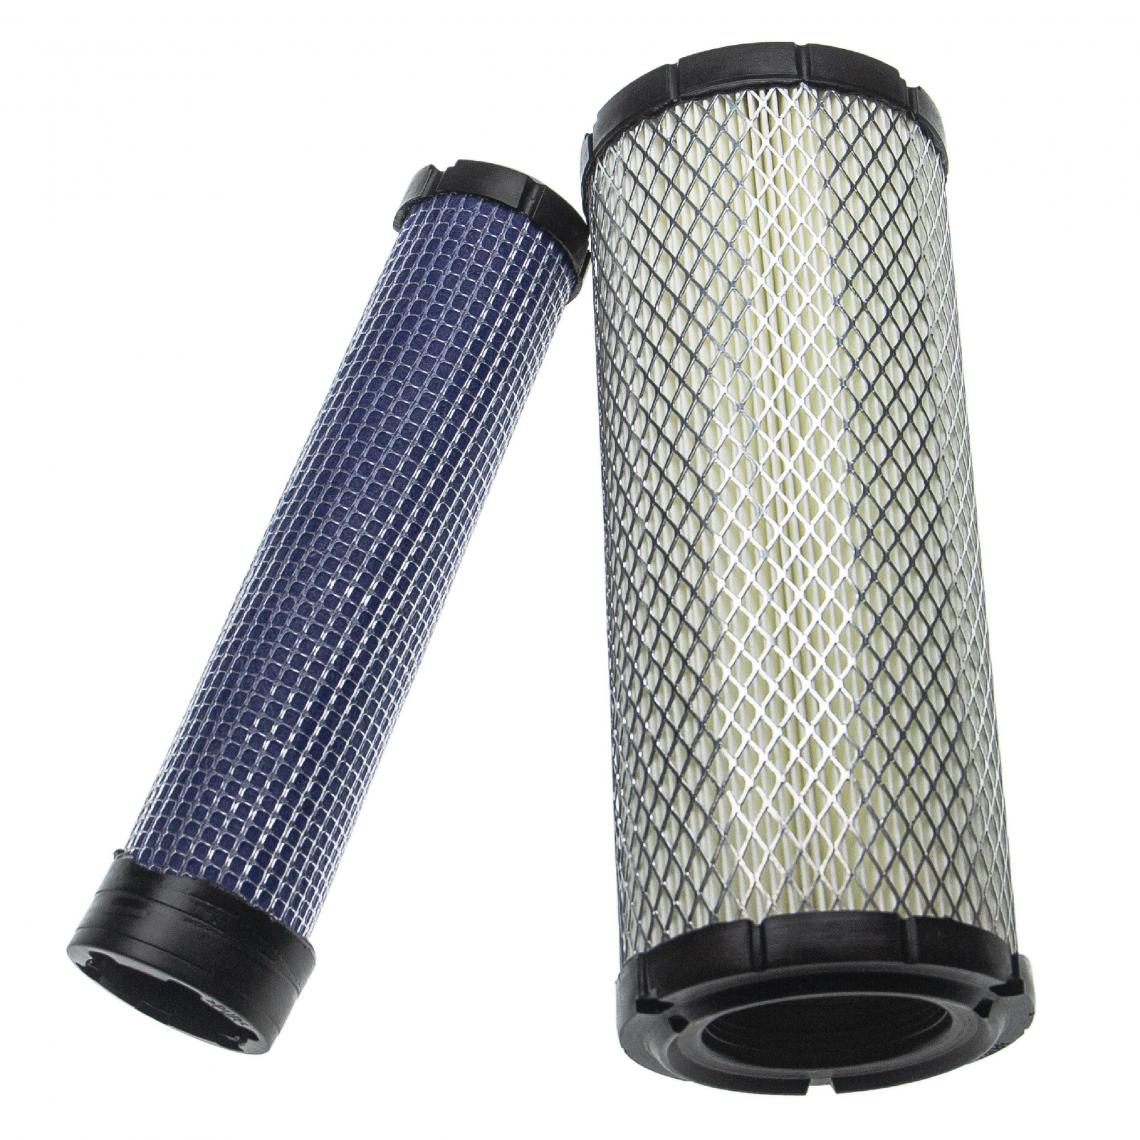 Vhbw - vhbw Lot de filtres remplacement pour Kohler 11013-7020, 25-083-01-S moteur d'engin; 1x filtre interne, 1x filtre extérieur - Autre appareil de mesure